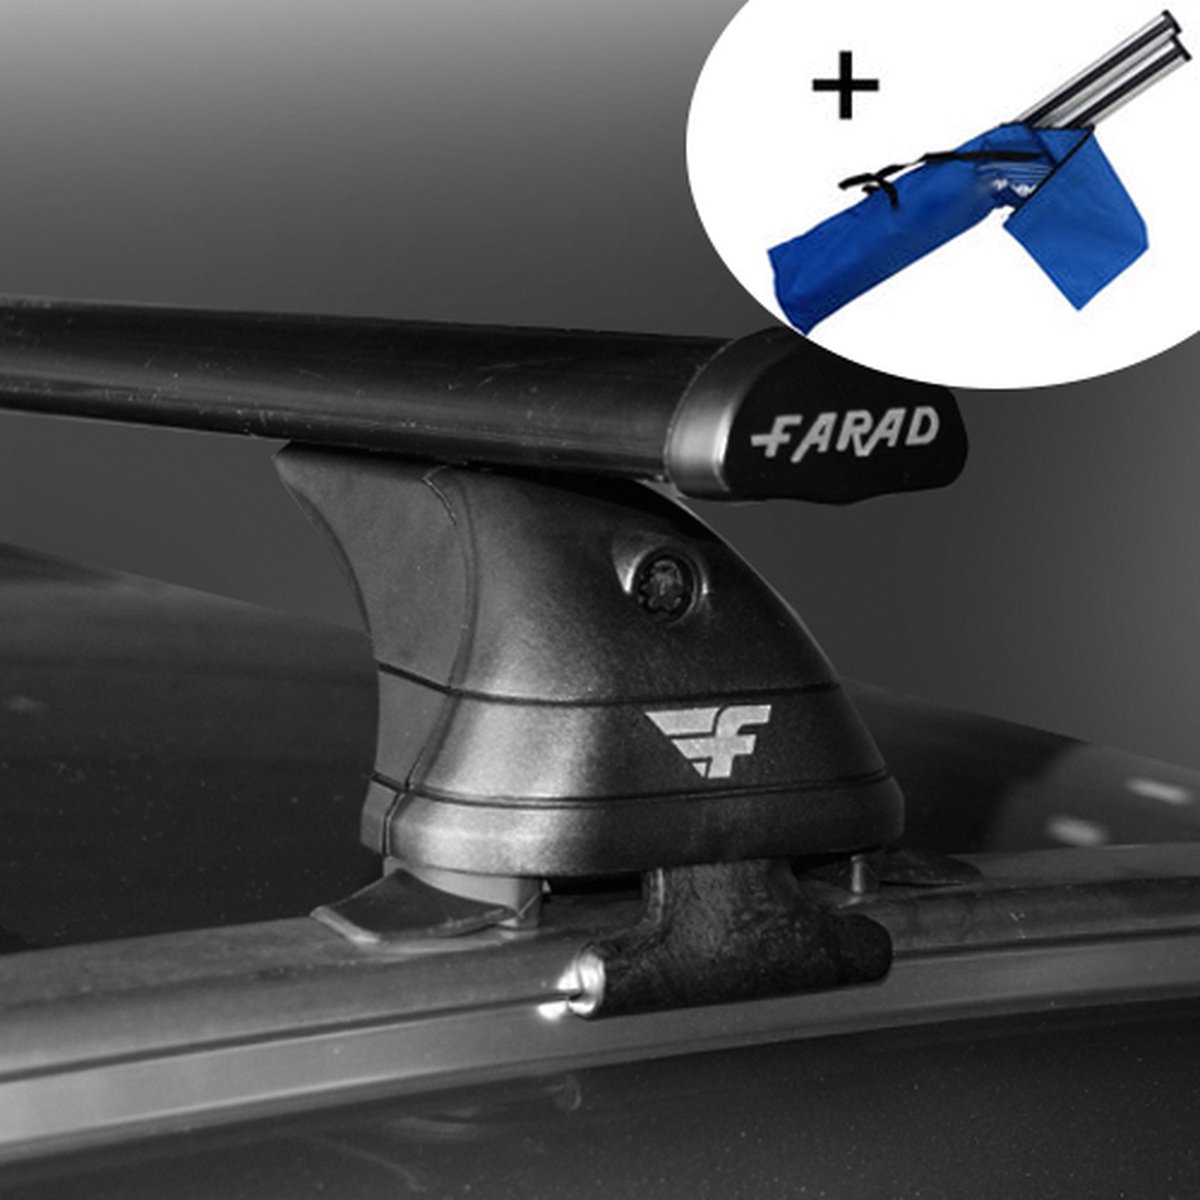 Dakdragers geschikt voor Ford S-Max 5 deurs hatchback vanaf 2015 - Staal - inclusief dakdrager opbergtas